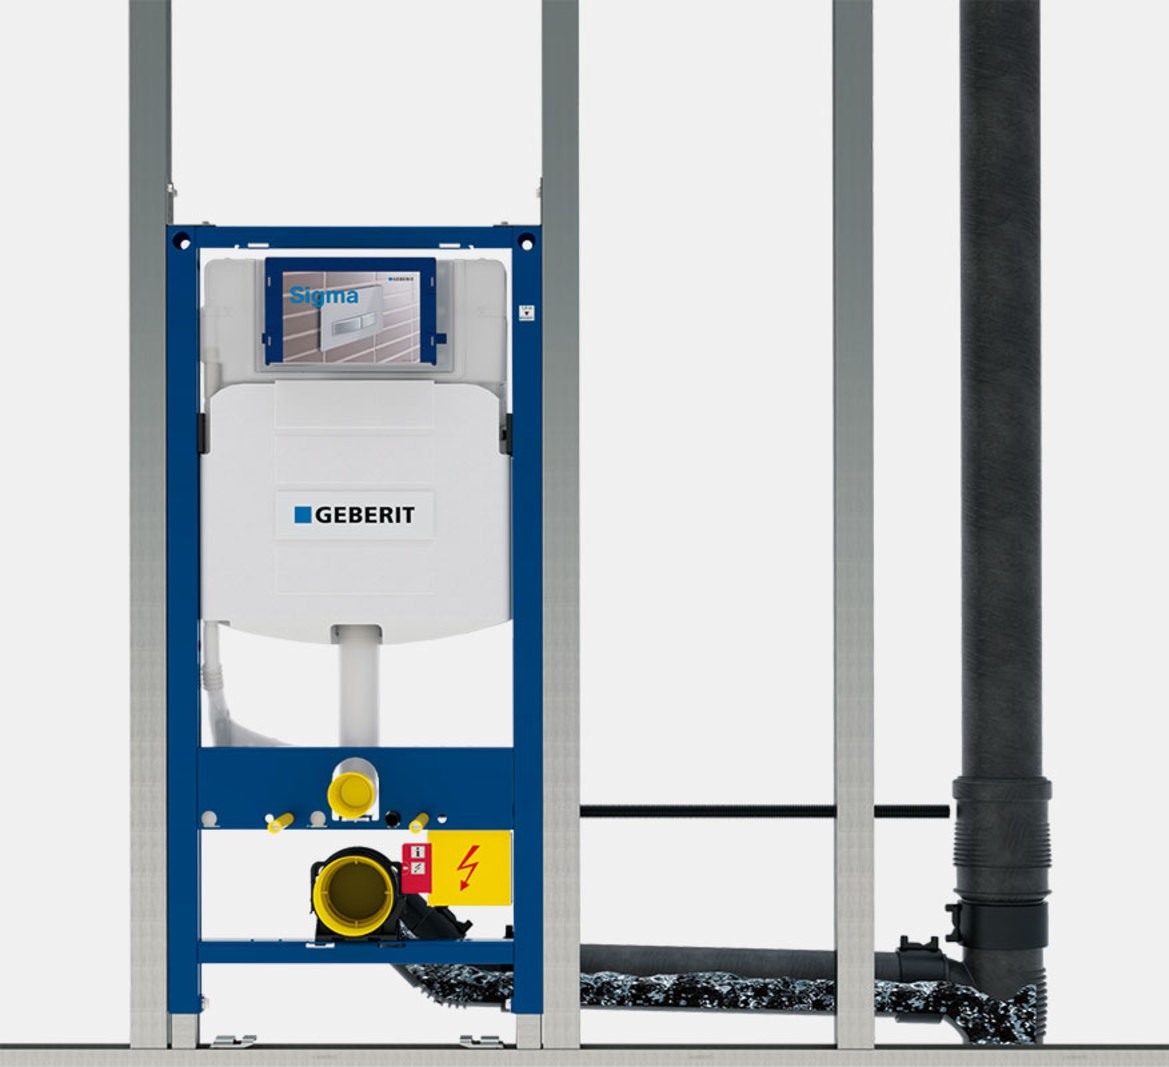 Pasujące do toalety Geberit DuoFresh systemy instalacyjne ze spłuczką podtynkową Sigma mają wysokość zabudowy 112 cm i przycisk montowany z przodu​ (fot. GEBERIT)